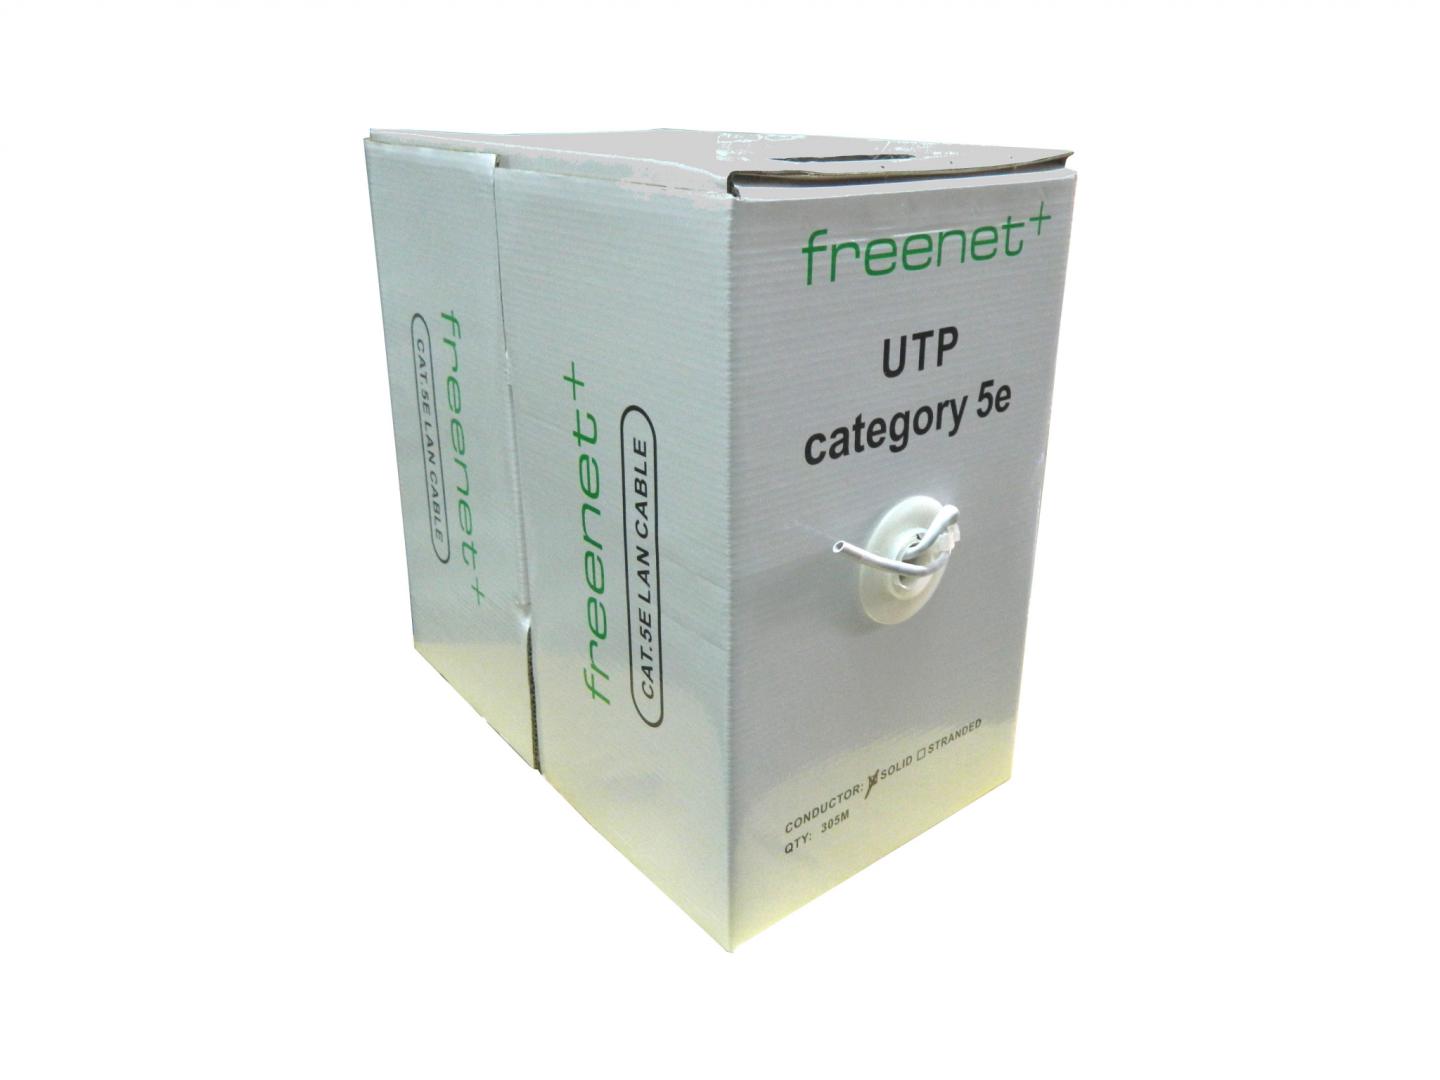 Cablu UTP categoria 5e CCA FRE-UTP5E / Freenet - rola 305m.